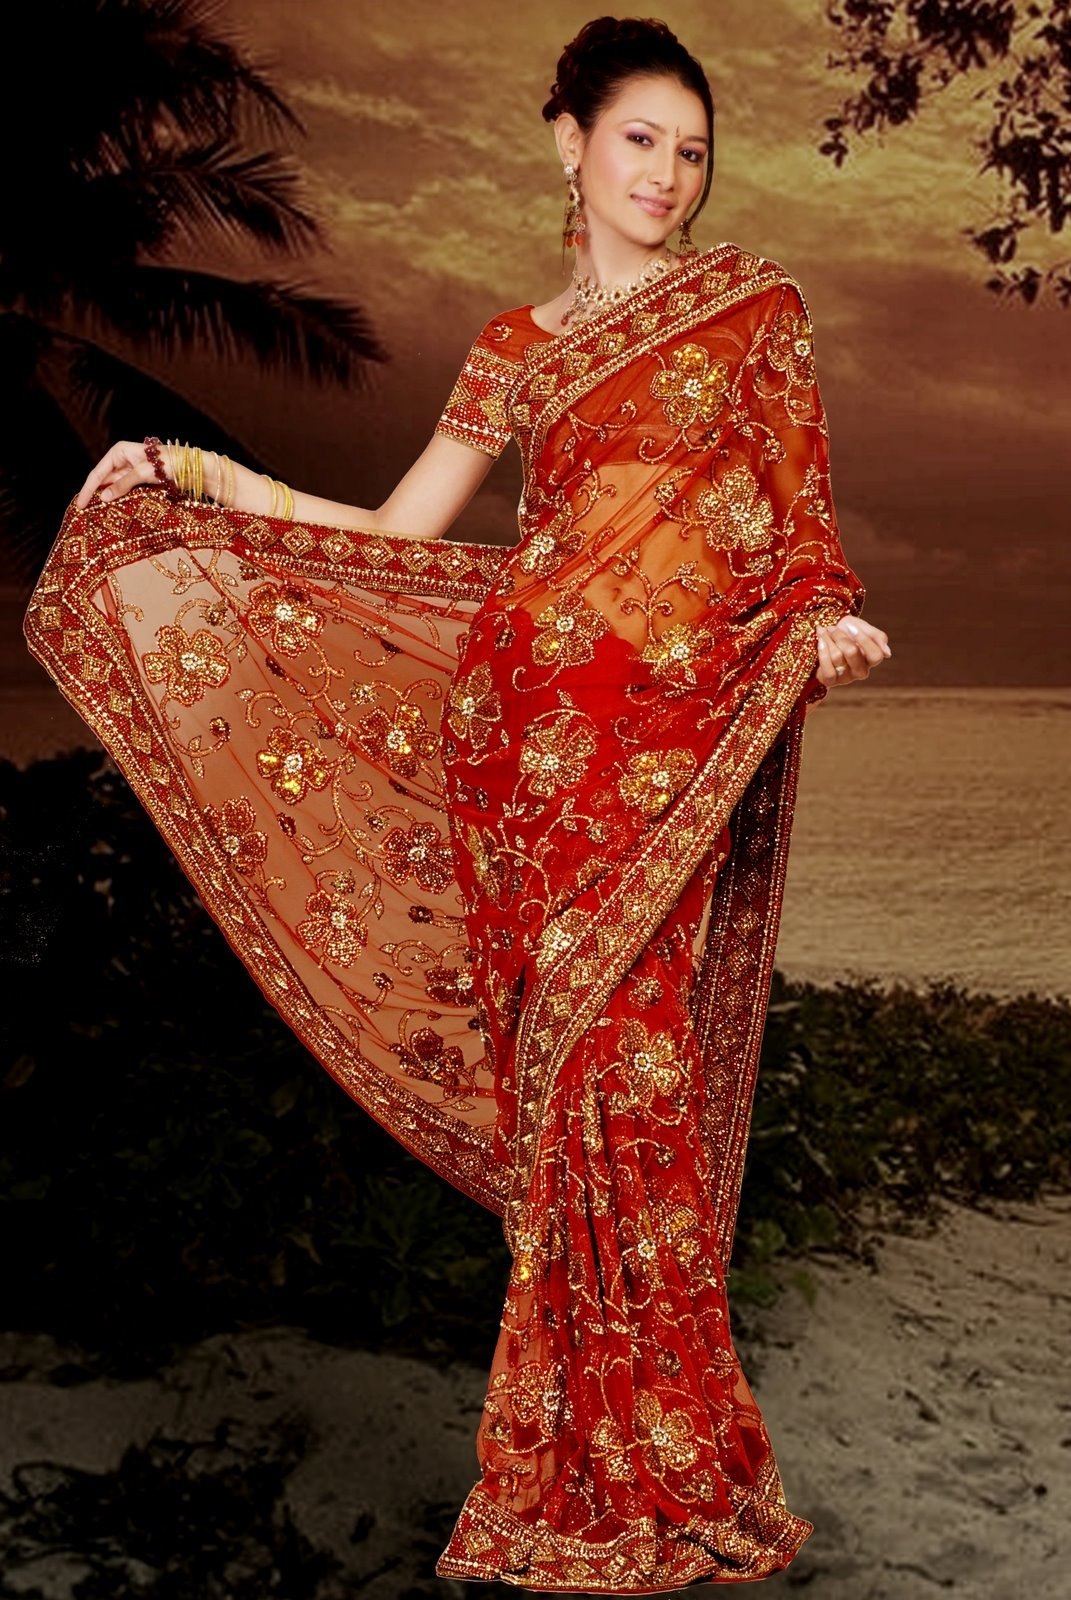 Сари личная. Сари Индия. Сари индийская одежда. Сари (женская одежда в Индии). Национальная одежда Индии Сари.